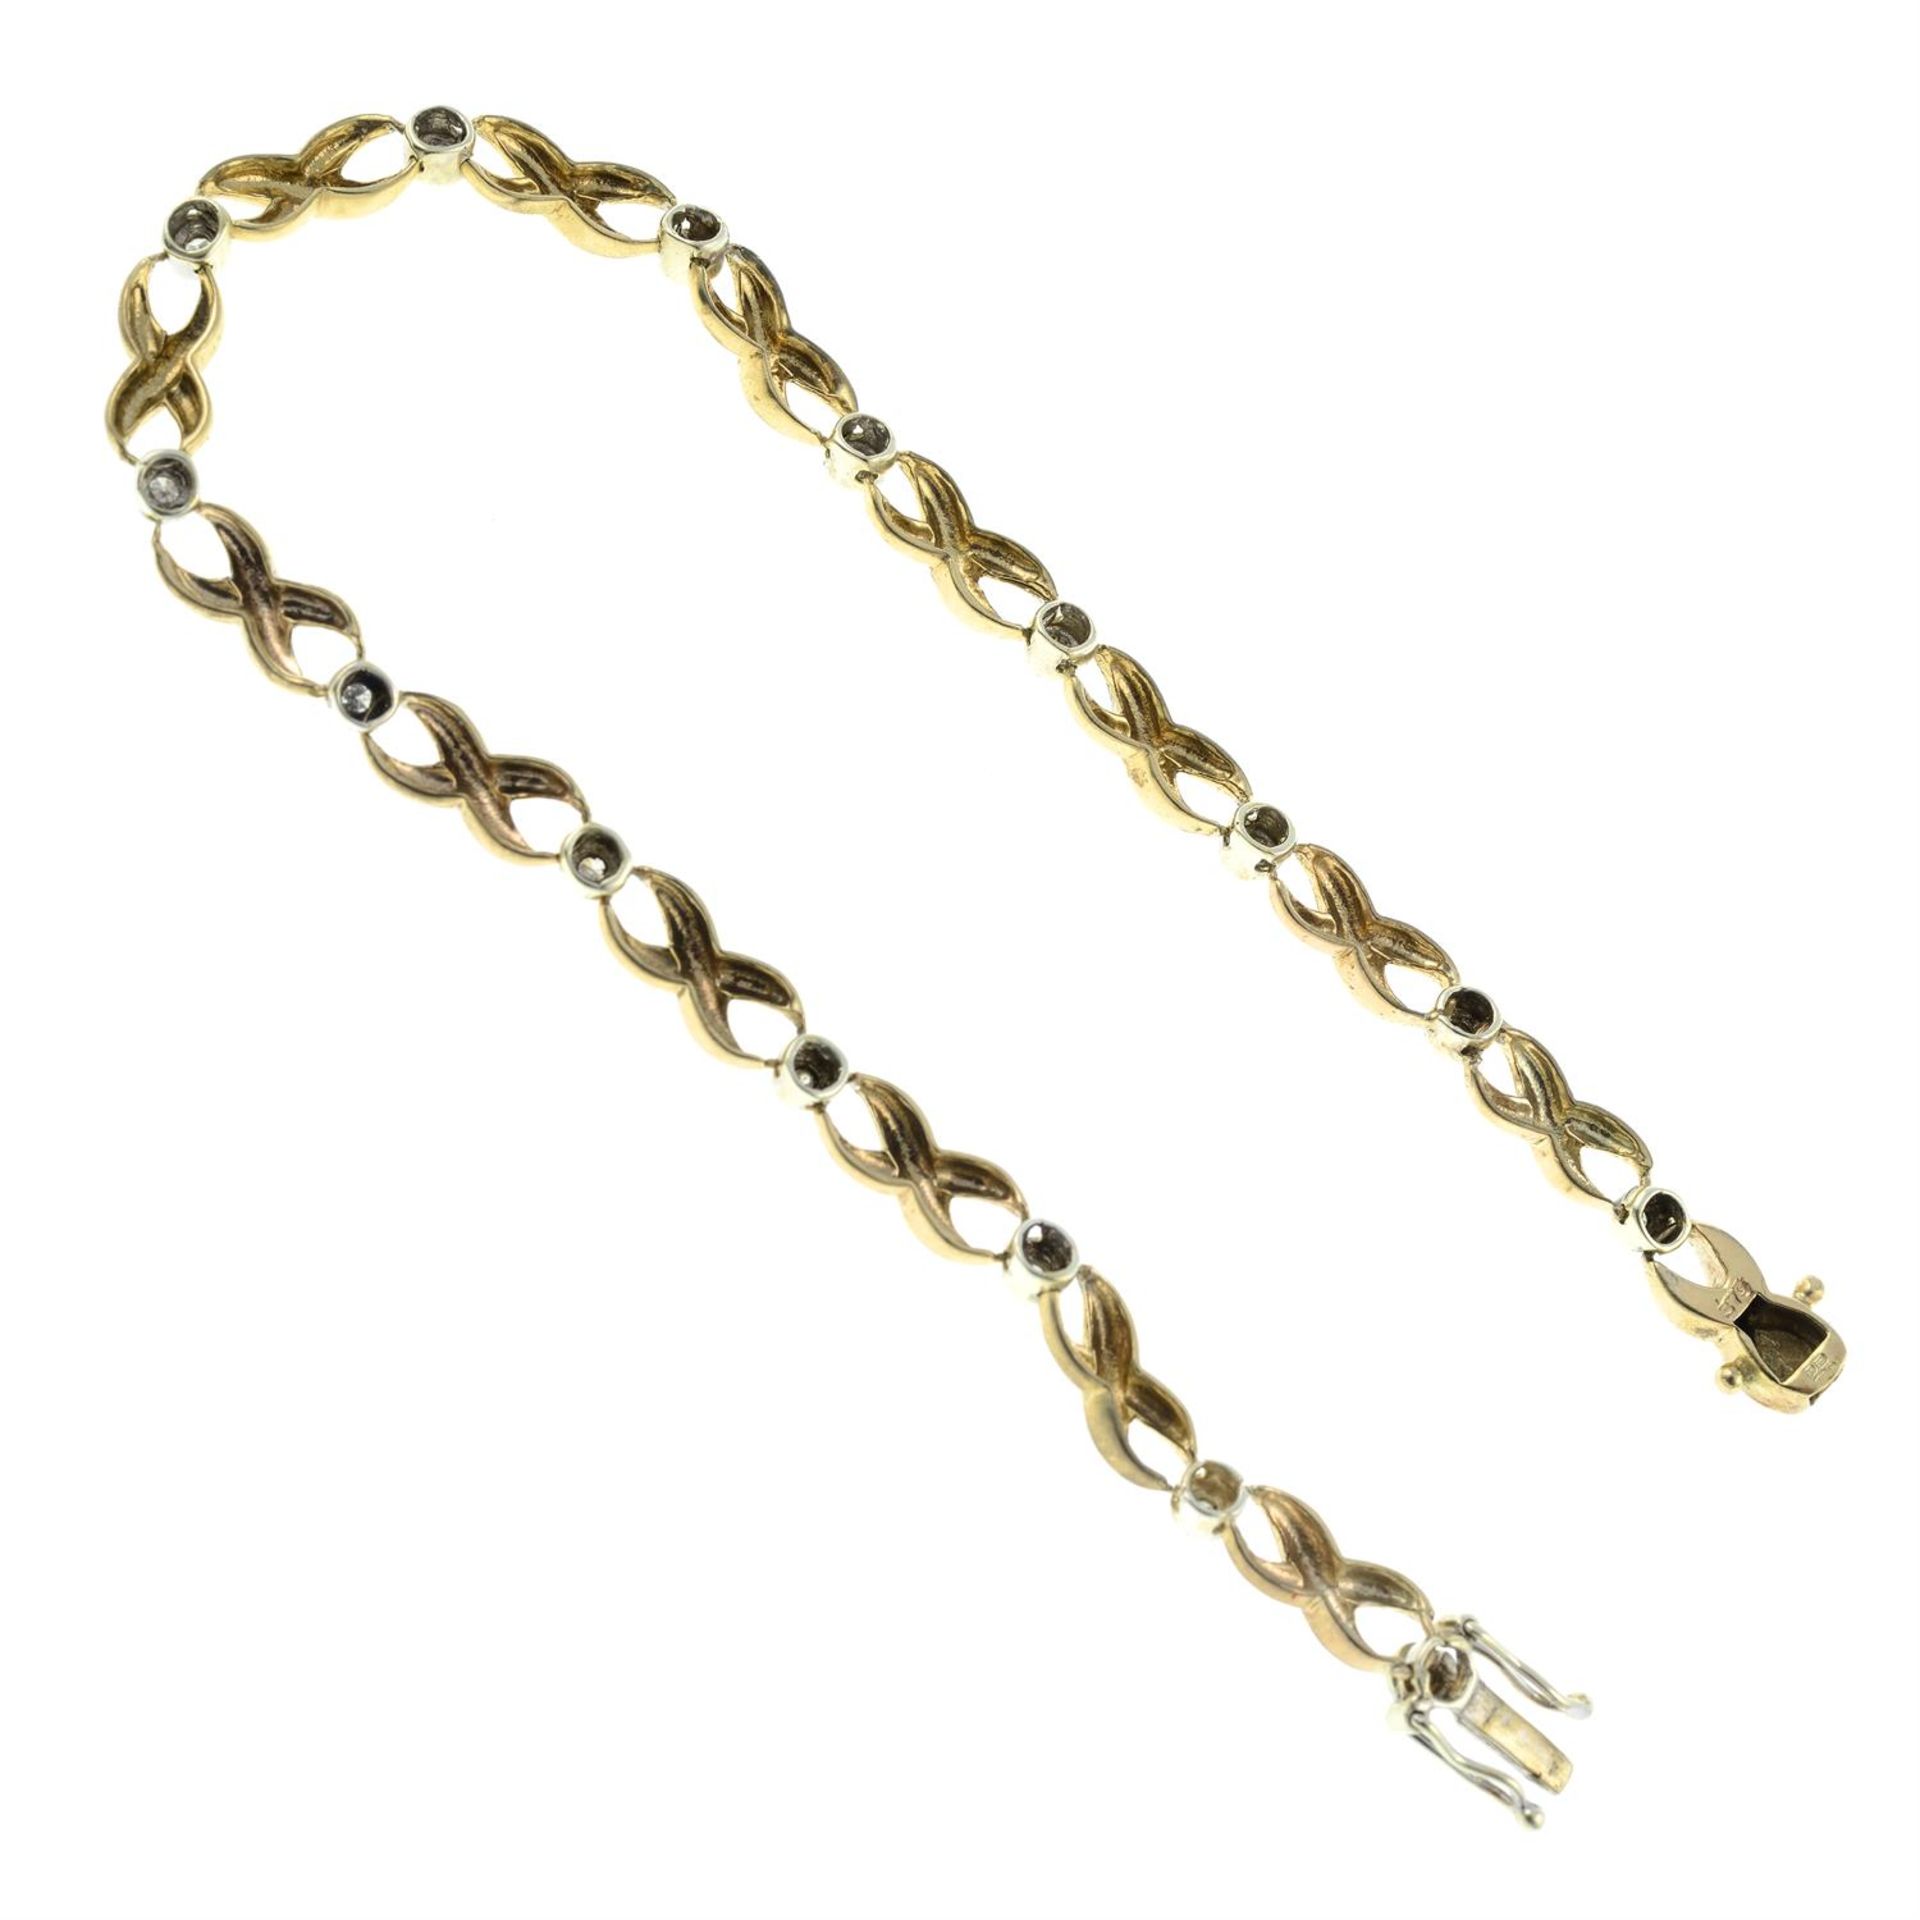 A 9ct gold diamond bracelet. - Image 2 of 2